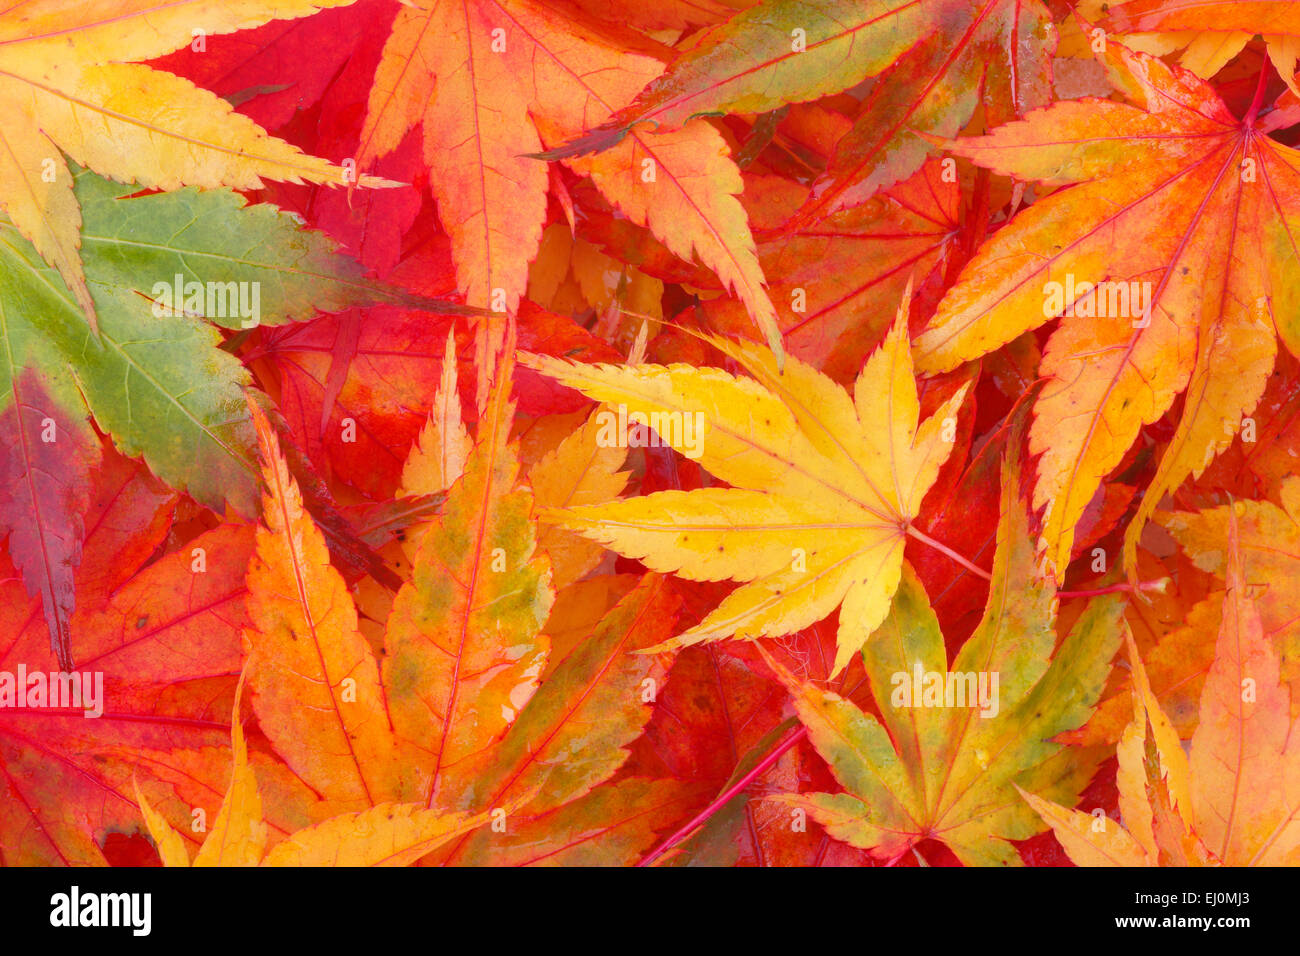 Ahorn, Blatt, Blätter, Detail, Herbst, Farben, Herbst, Laub, herbstliche Verfärbung, Laub, Makro, Muster, Konzepte, close-up, Stockfoto